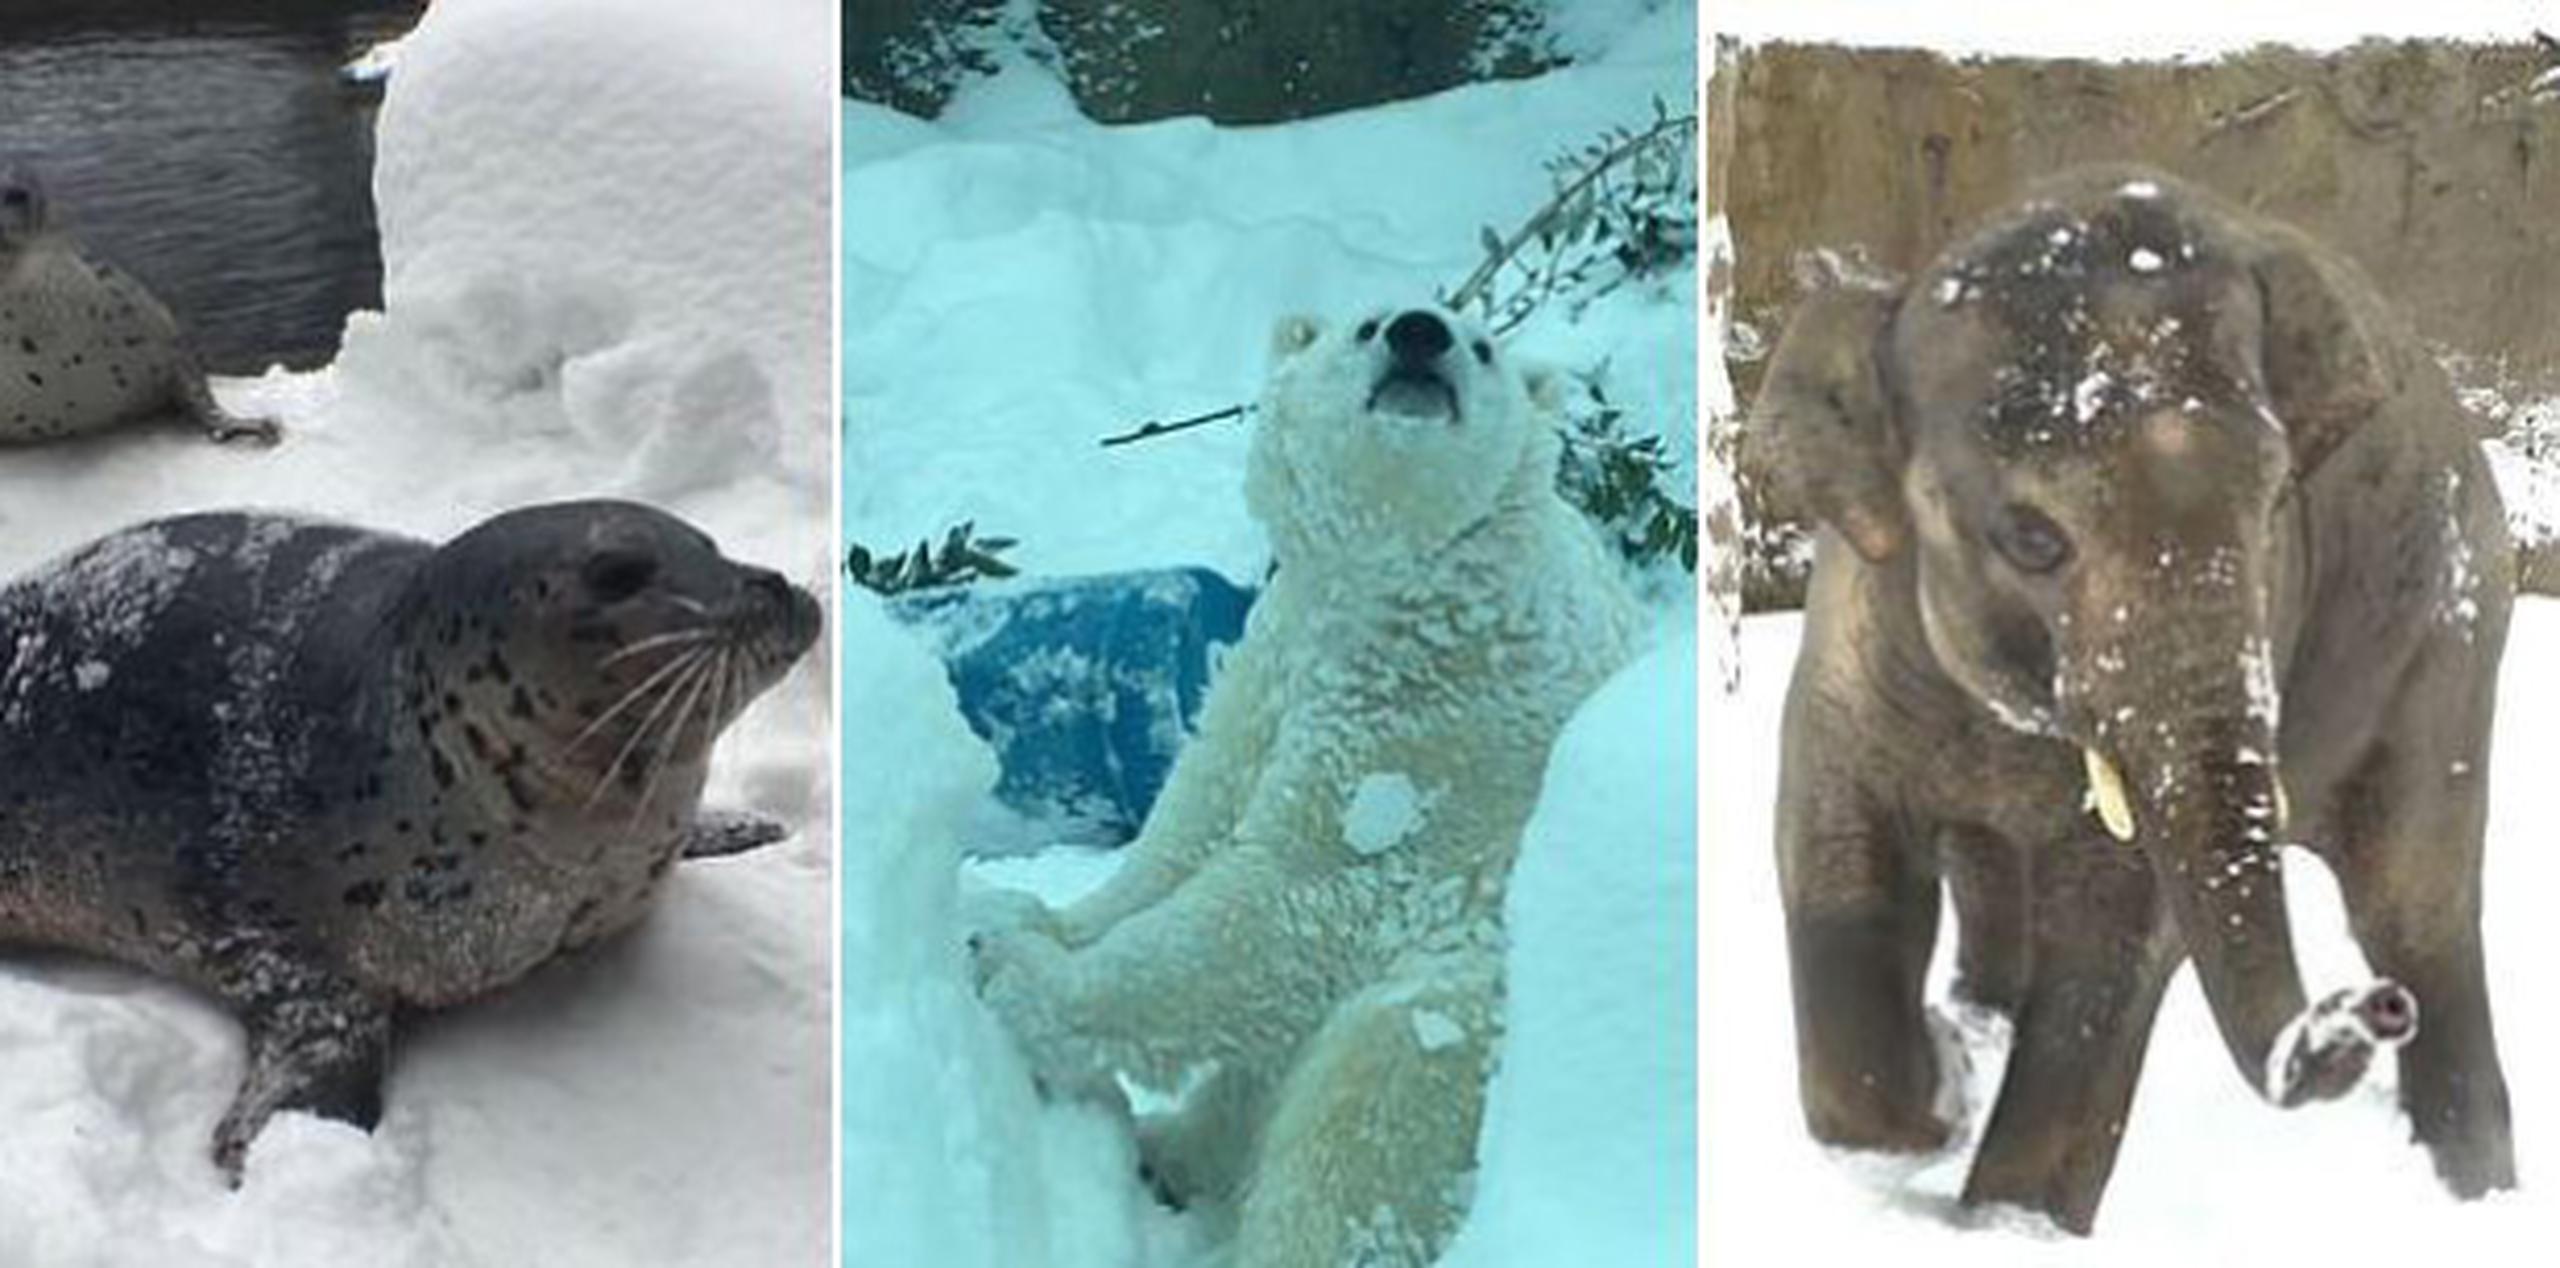 Pese a la nevada, los empleados del zoológico no desistieron en su trabajo de cuidar a los animales. (YouTube/Oregon Zoo)